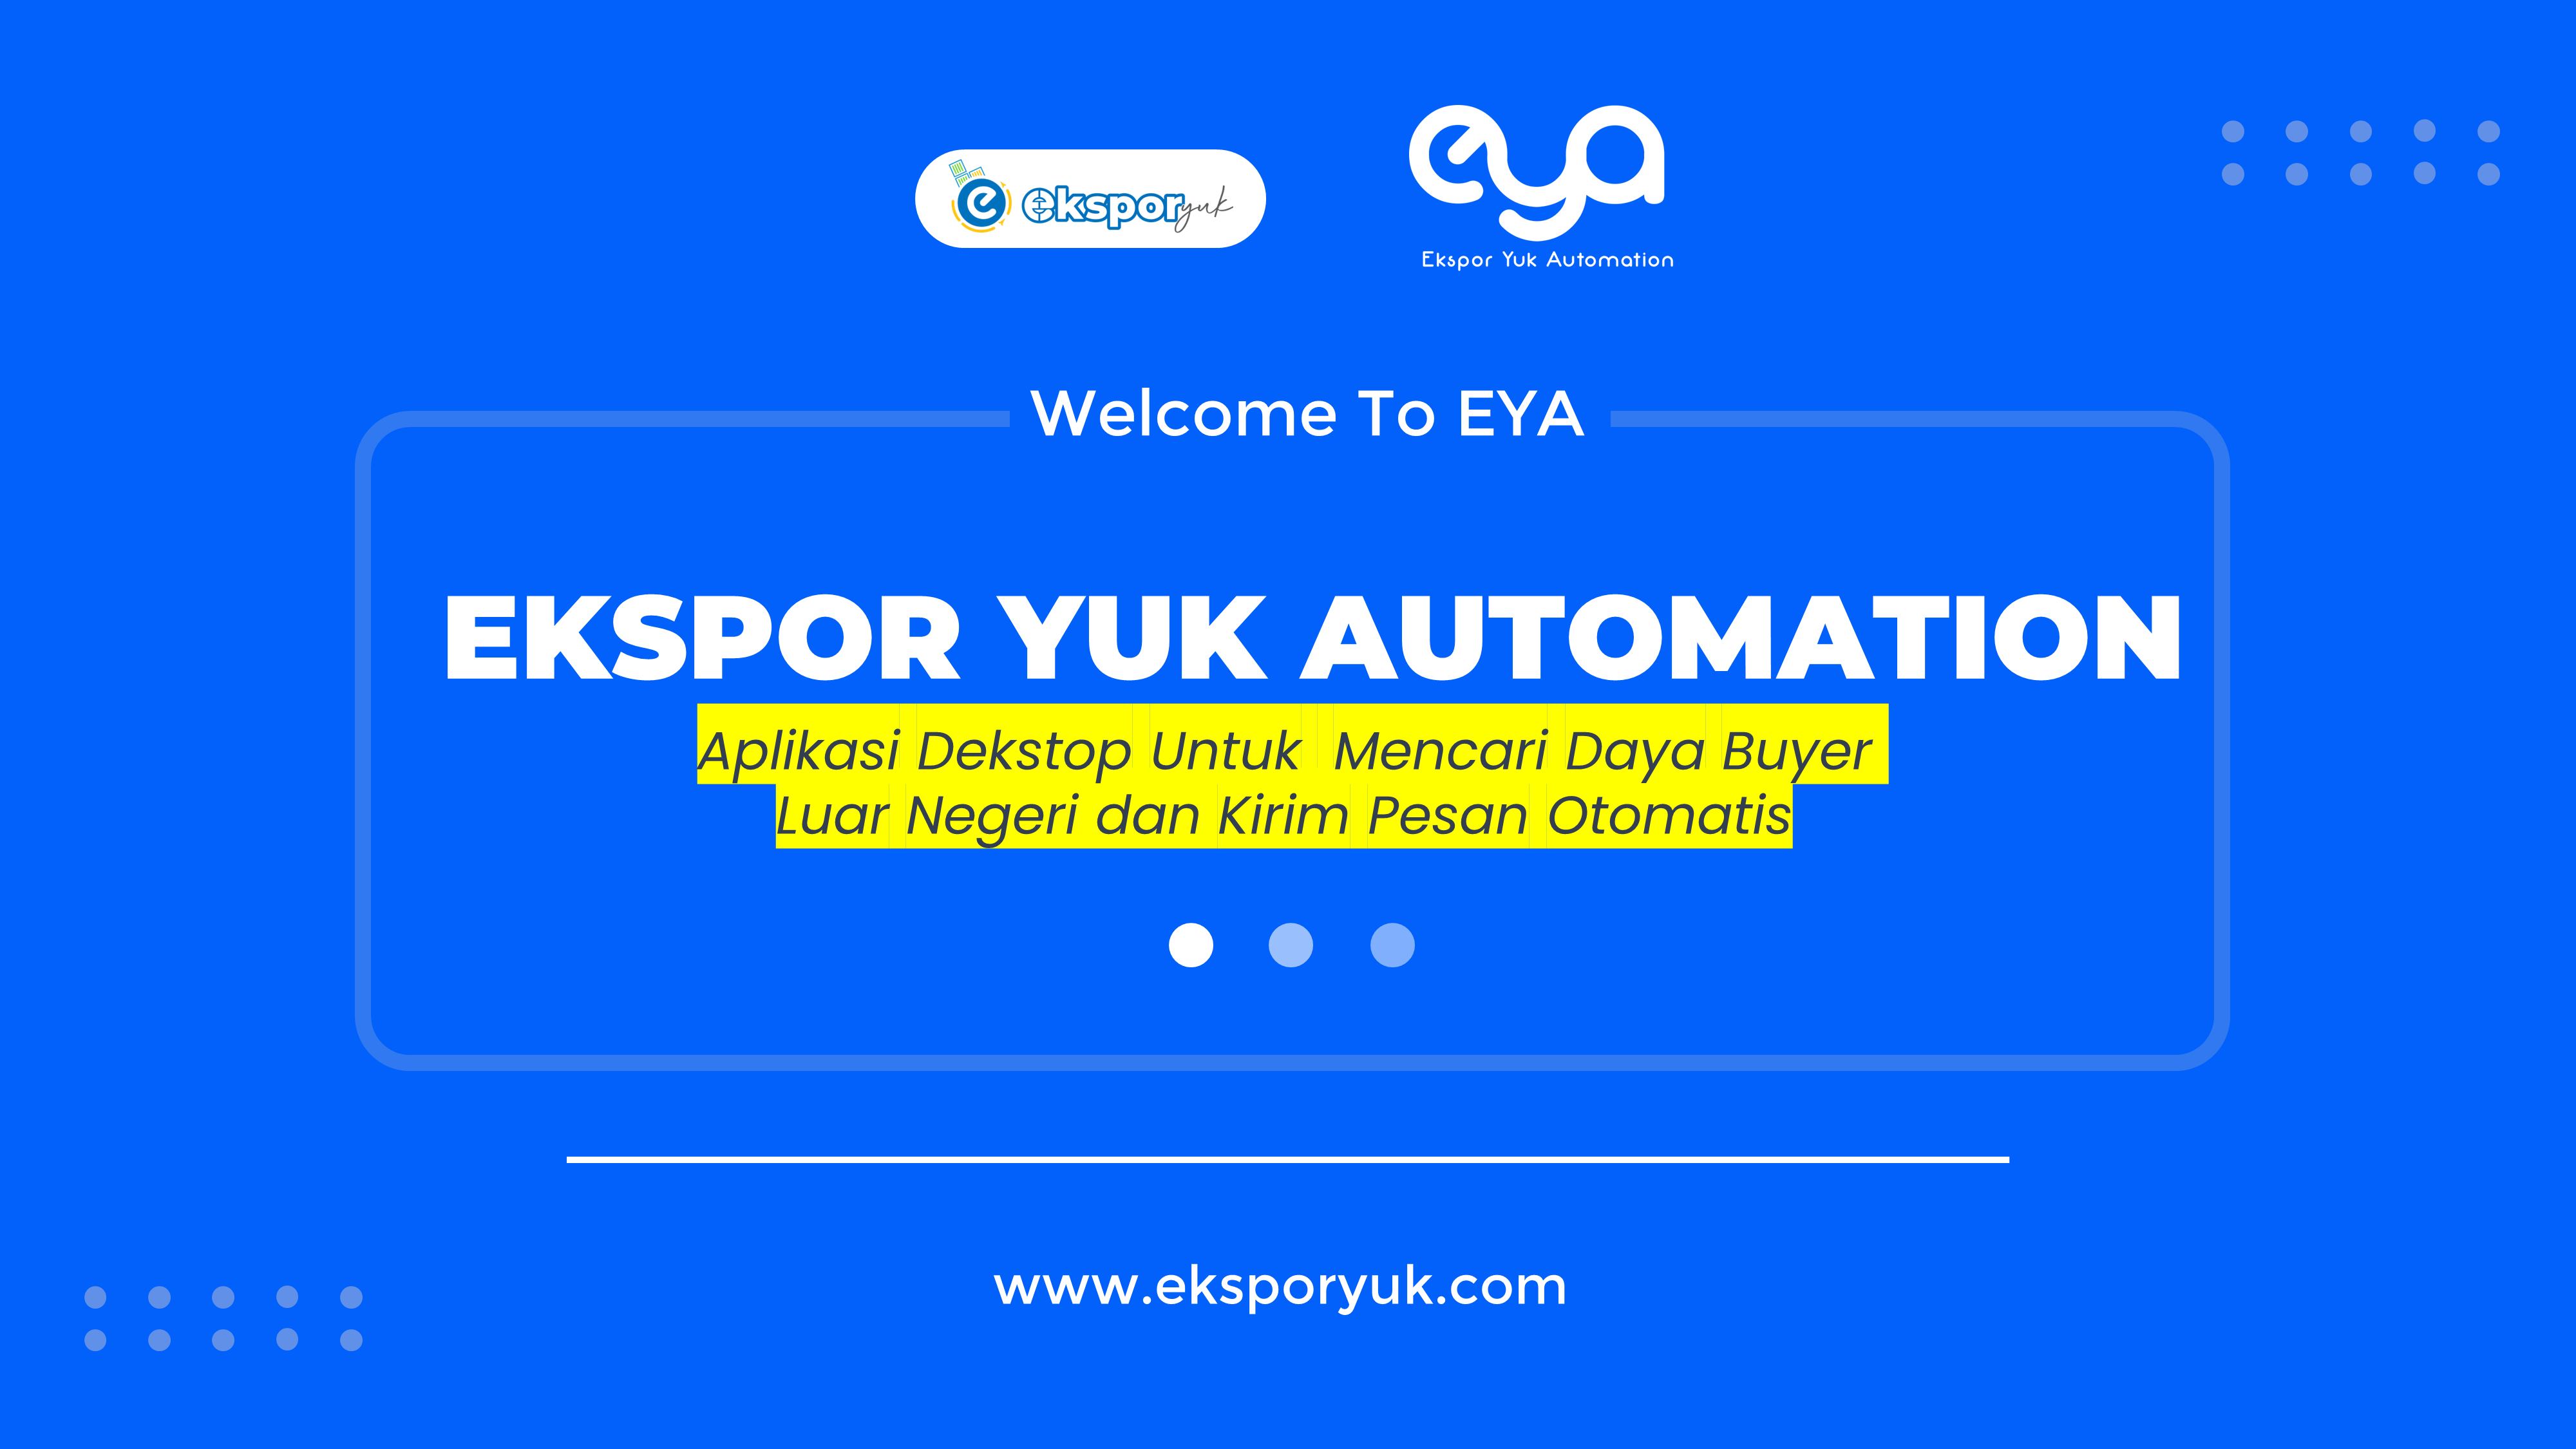 Ekspor Yuk Automation (EYA)